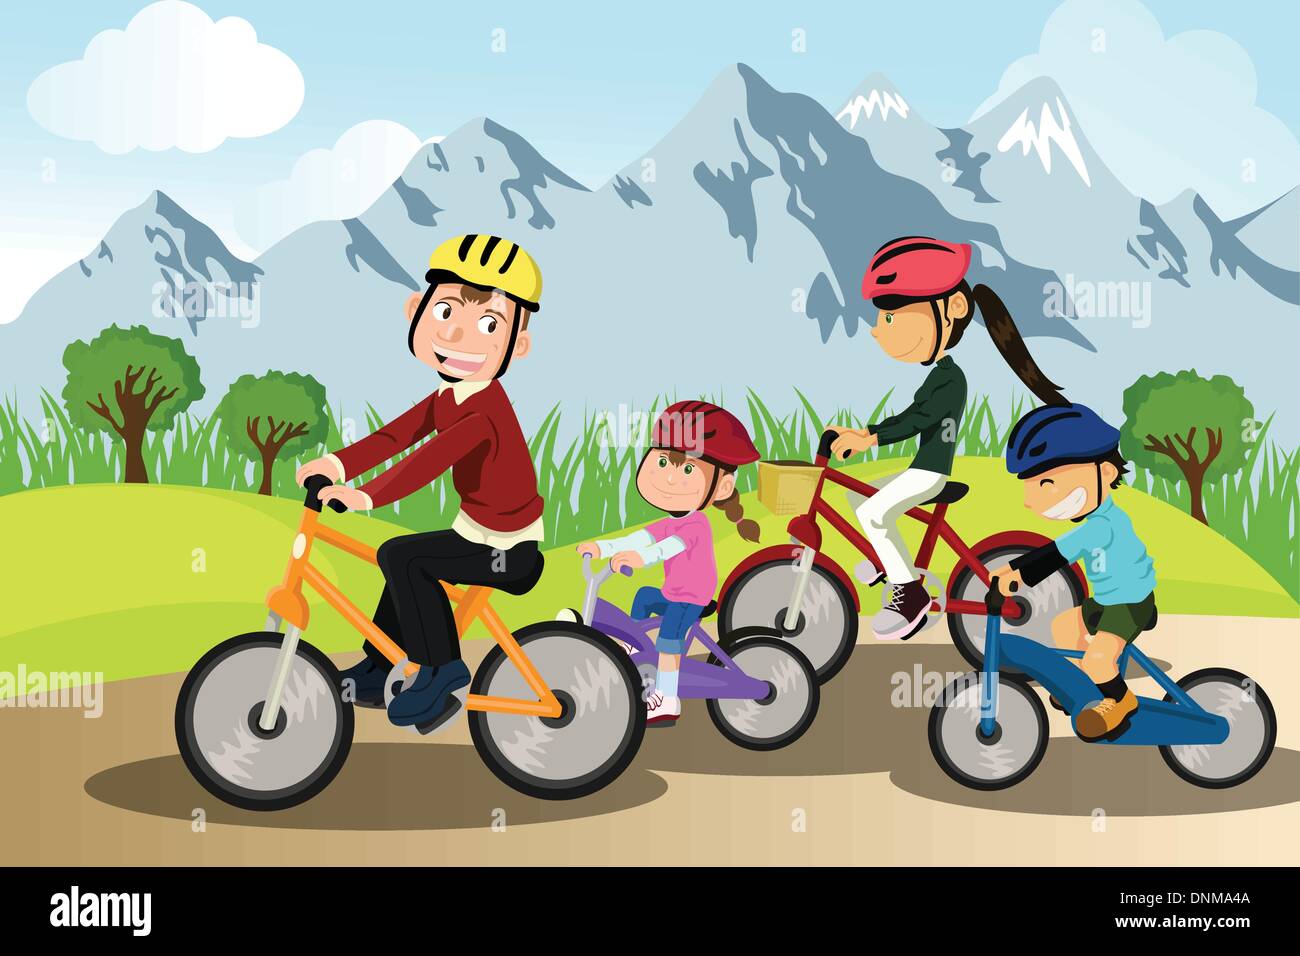 Eine Vektor-Illustration einer Familie Radfahren zusammen in einer ländlichen Gegend Stock Vektor